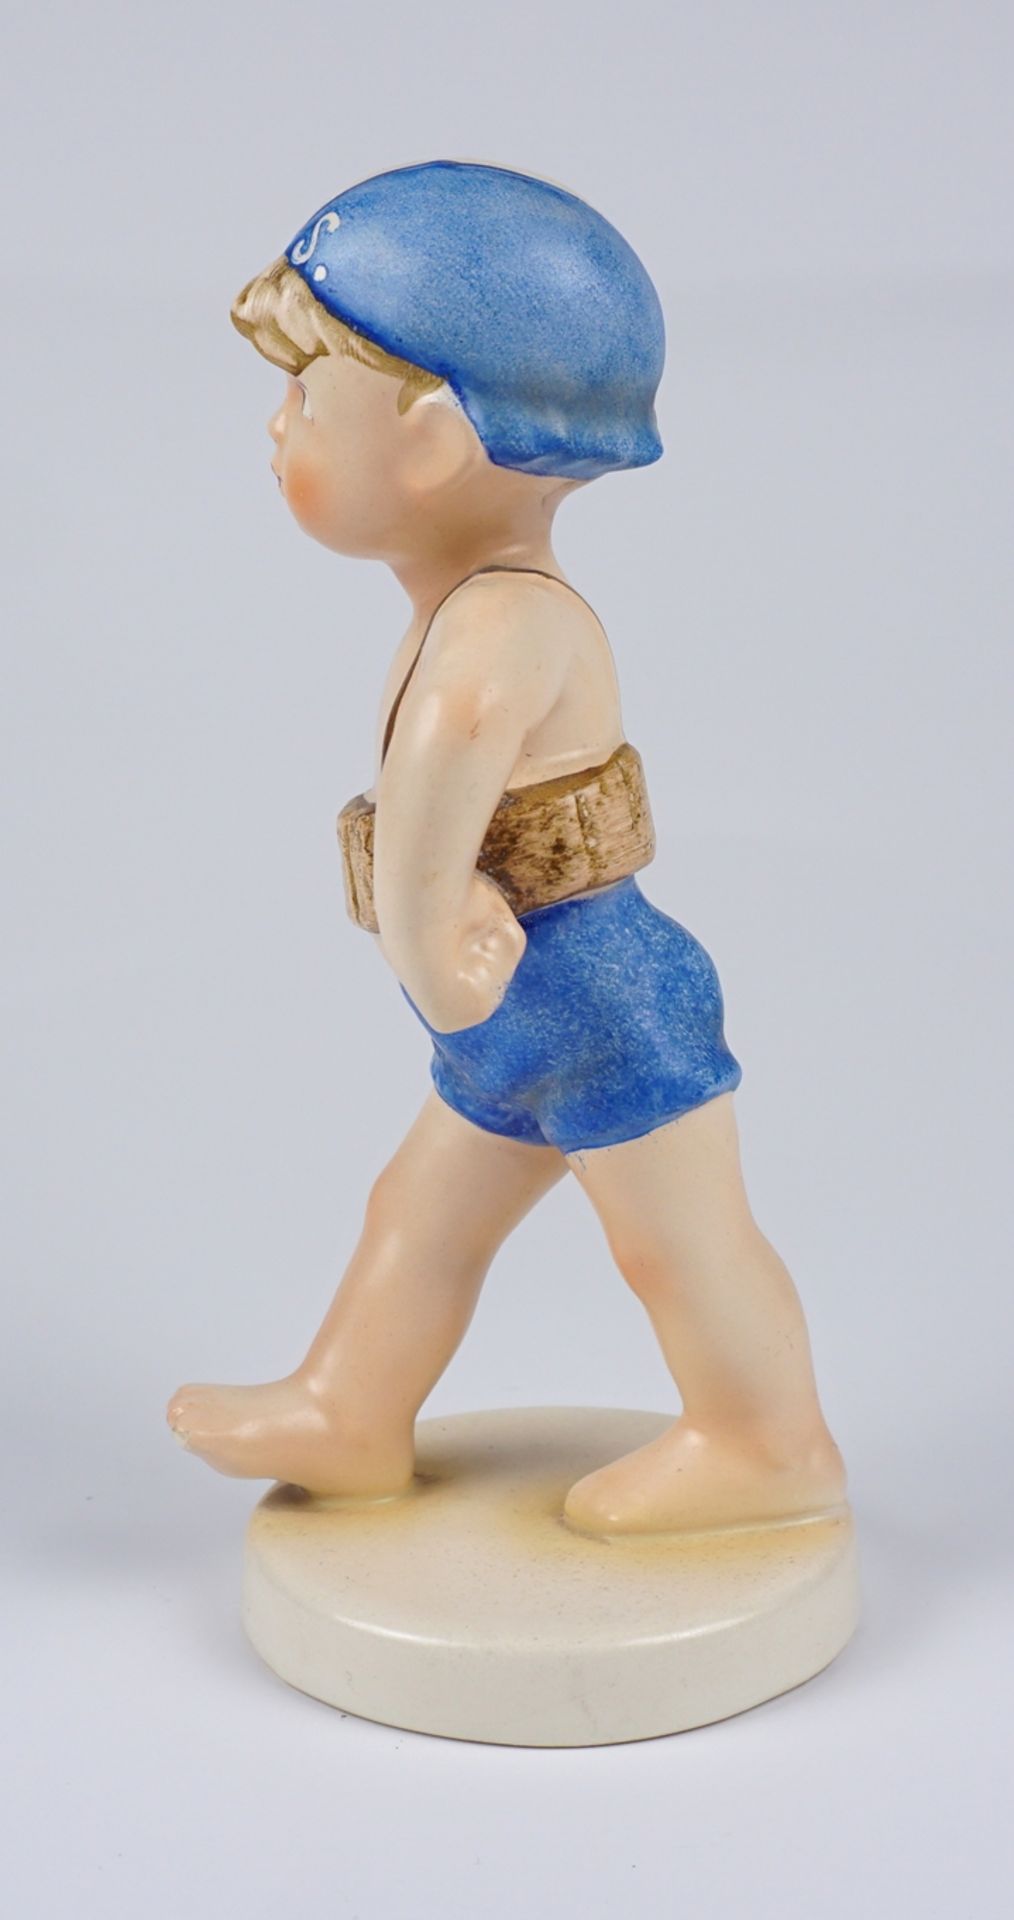 seltene Goebel-Figur "Schwimmer", Goebel Arbeitsmuster, farbig staffiert - Bild 4 aus 5